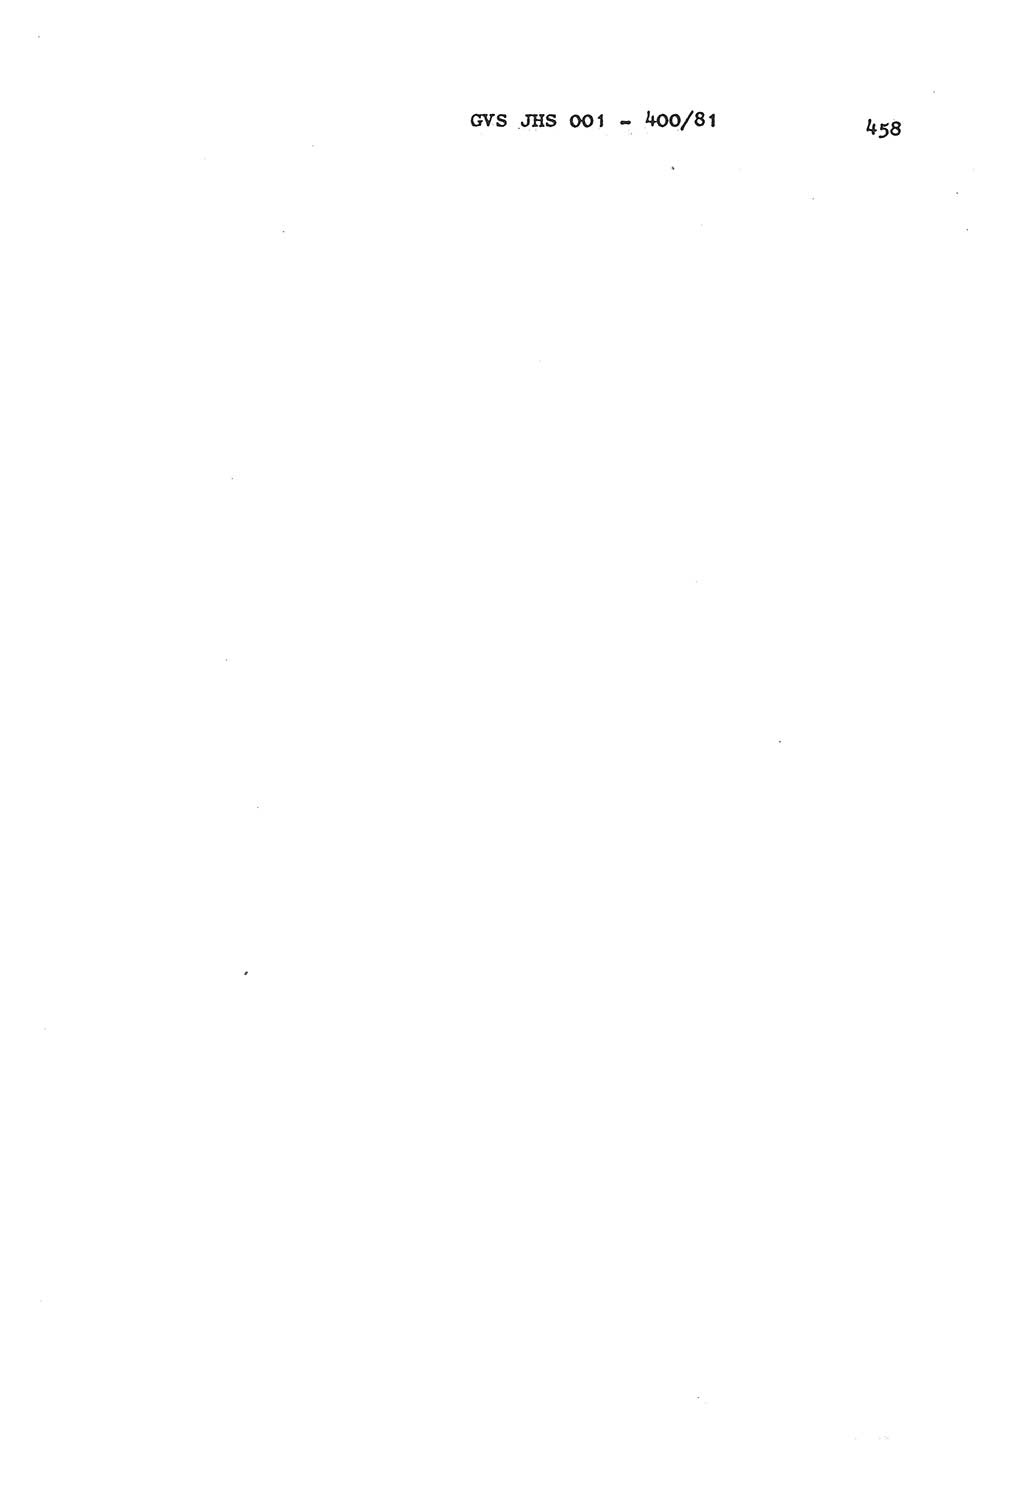 Wörterbuch der politisch-operativen Arbeit, Ministerium für Staatssicherheit (MfS) [Deutsche Demokratische Republik (DDR)], Juristische Hochschule (JHS), Geheime Verschlußsache (GVS) o001-400/81, Potsdam 1985, Blatt 458 (Wb. pol.-op. Arb. MfS DDR JHS GVS o001-400/81 1985, Bl. 458)